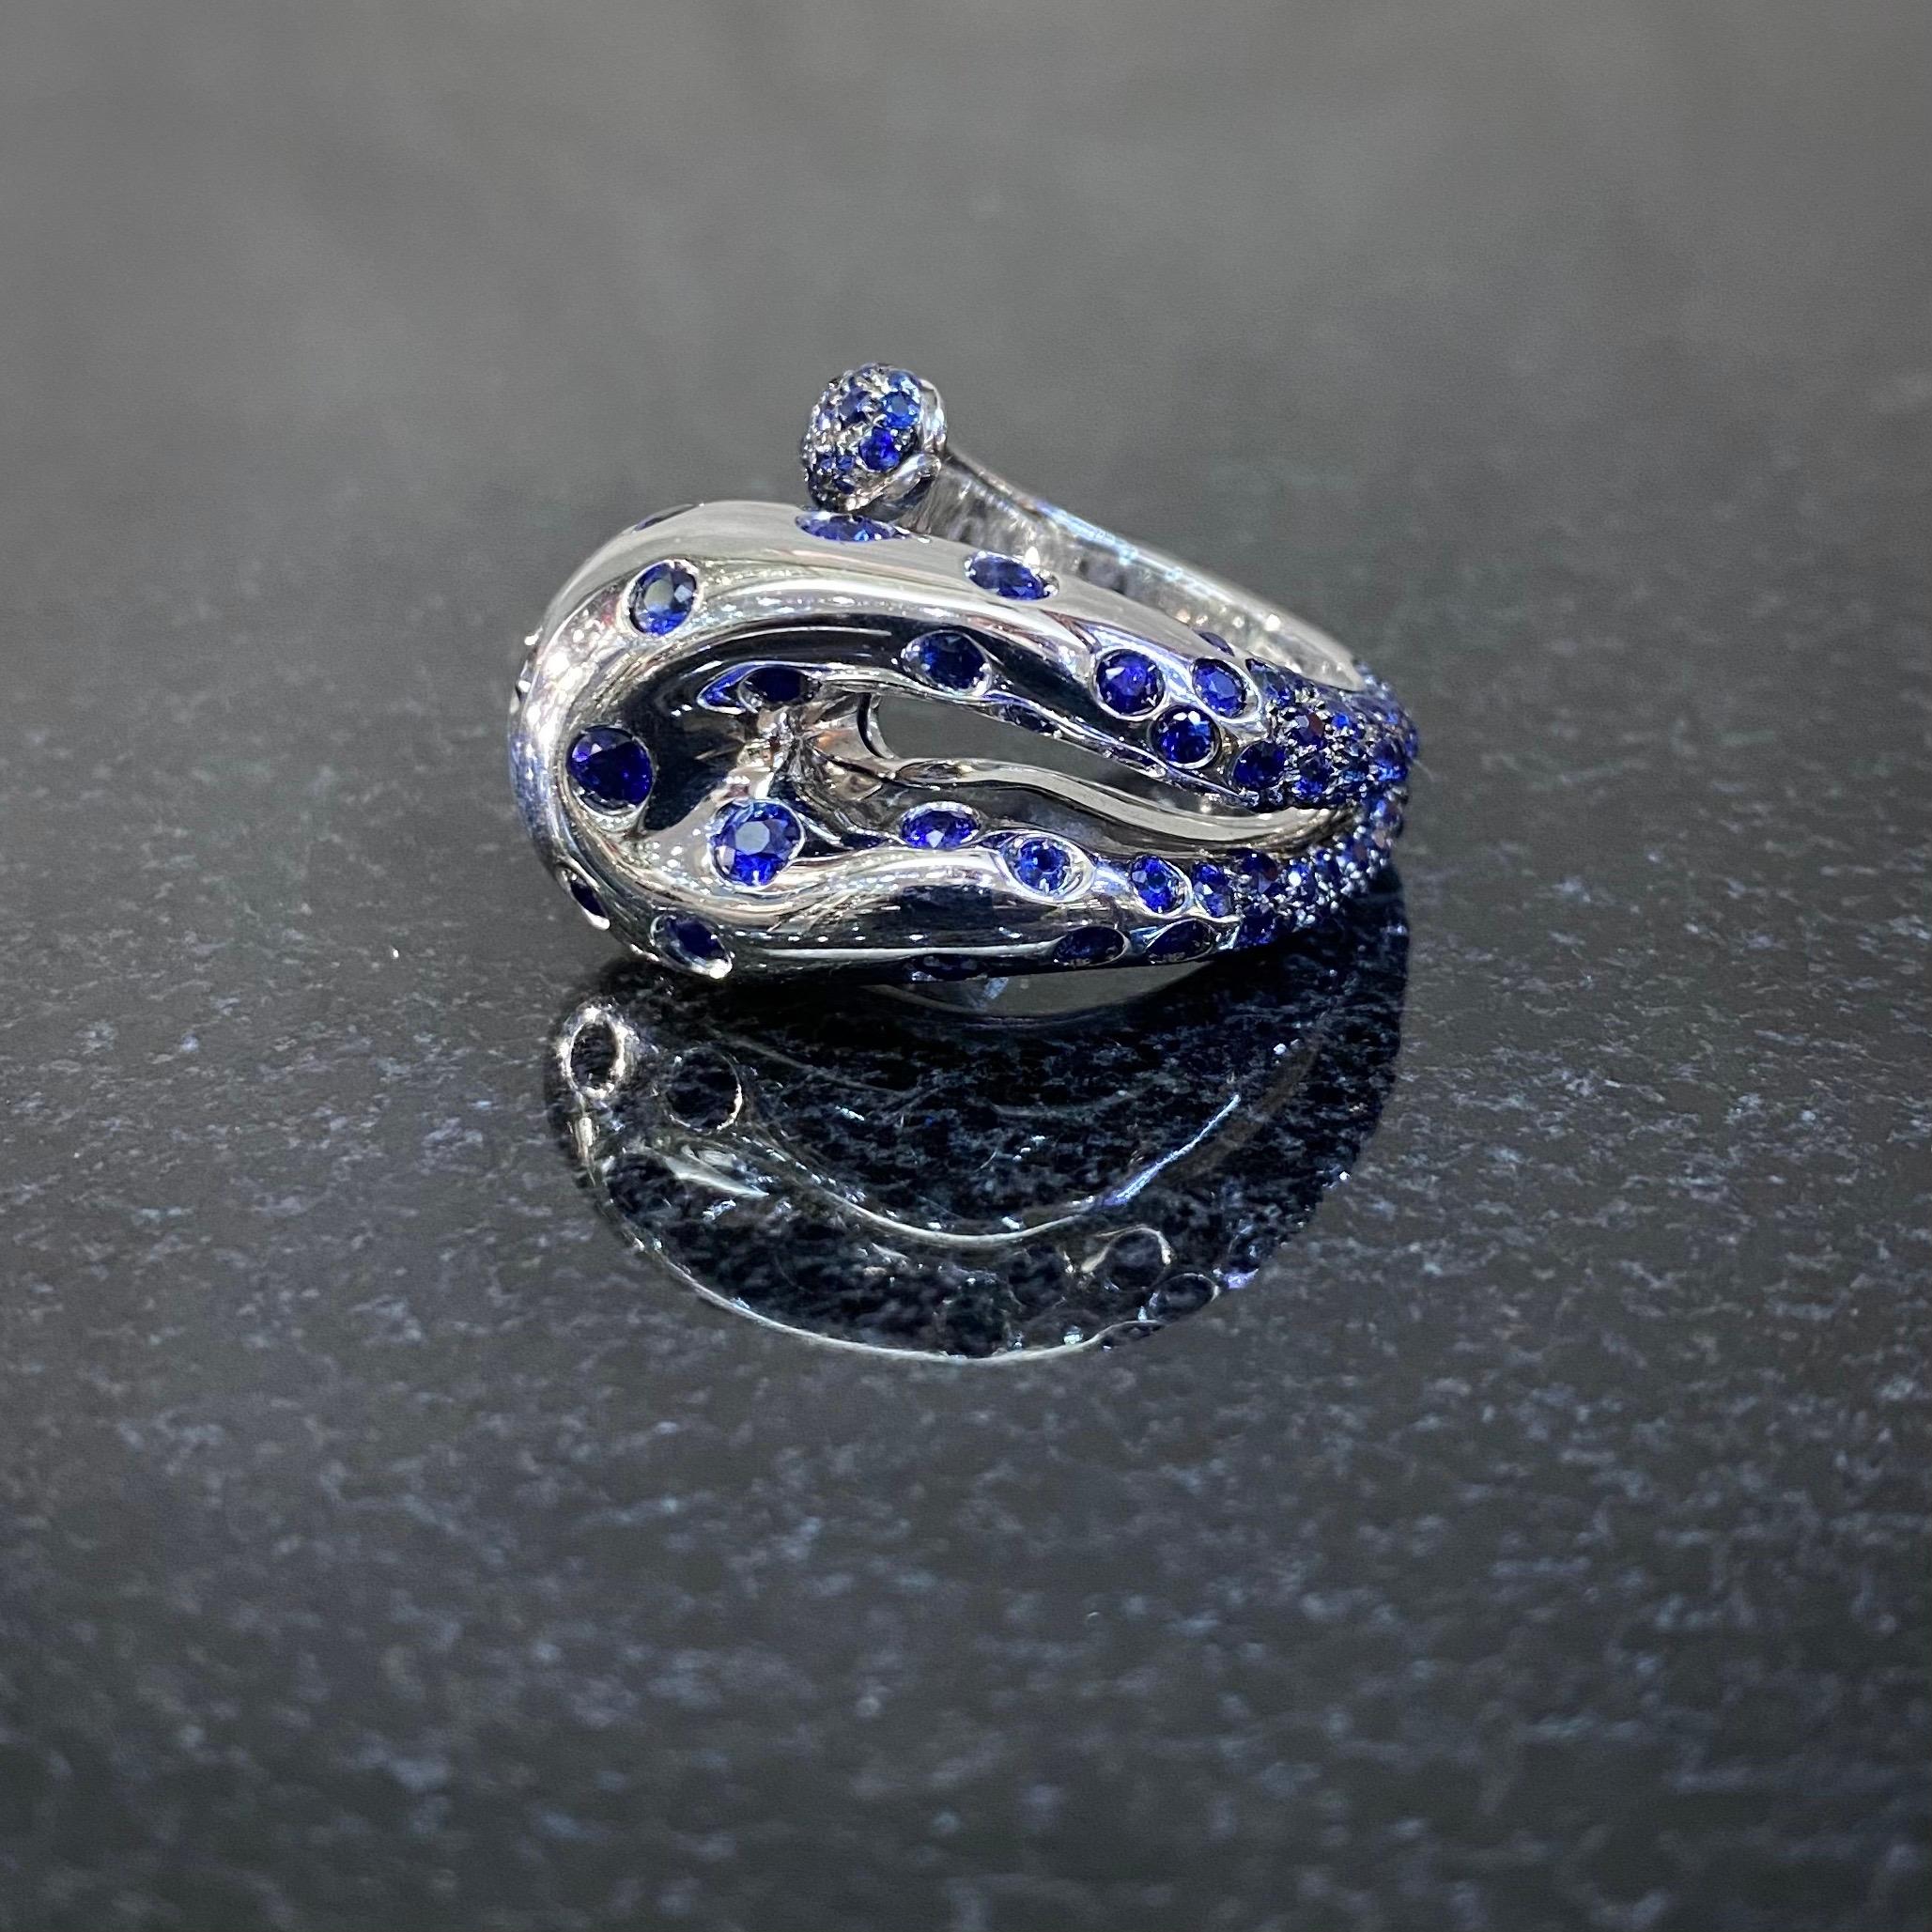 durchbrochener Cocktailring mit blauem Saphir und Schlange von de GRISOGONO aus 18 Karat Weißgold, um 2000. In Form einer abstrakten, durchbrochenen Schlange, die sich um den Finger schlängelt, ist der gewölbte Kopf dieses Rings durchgehend mit